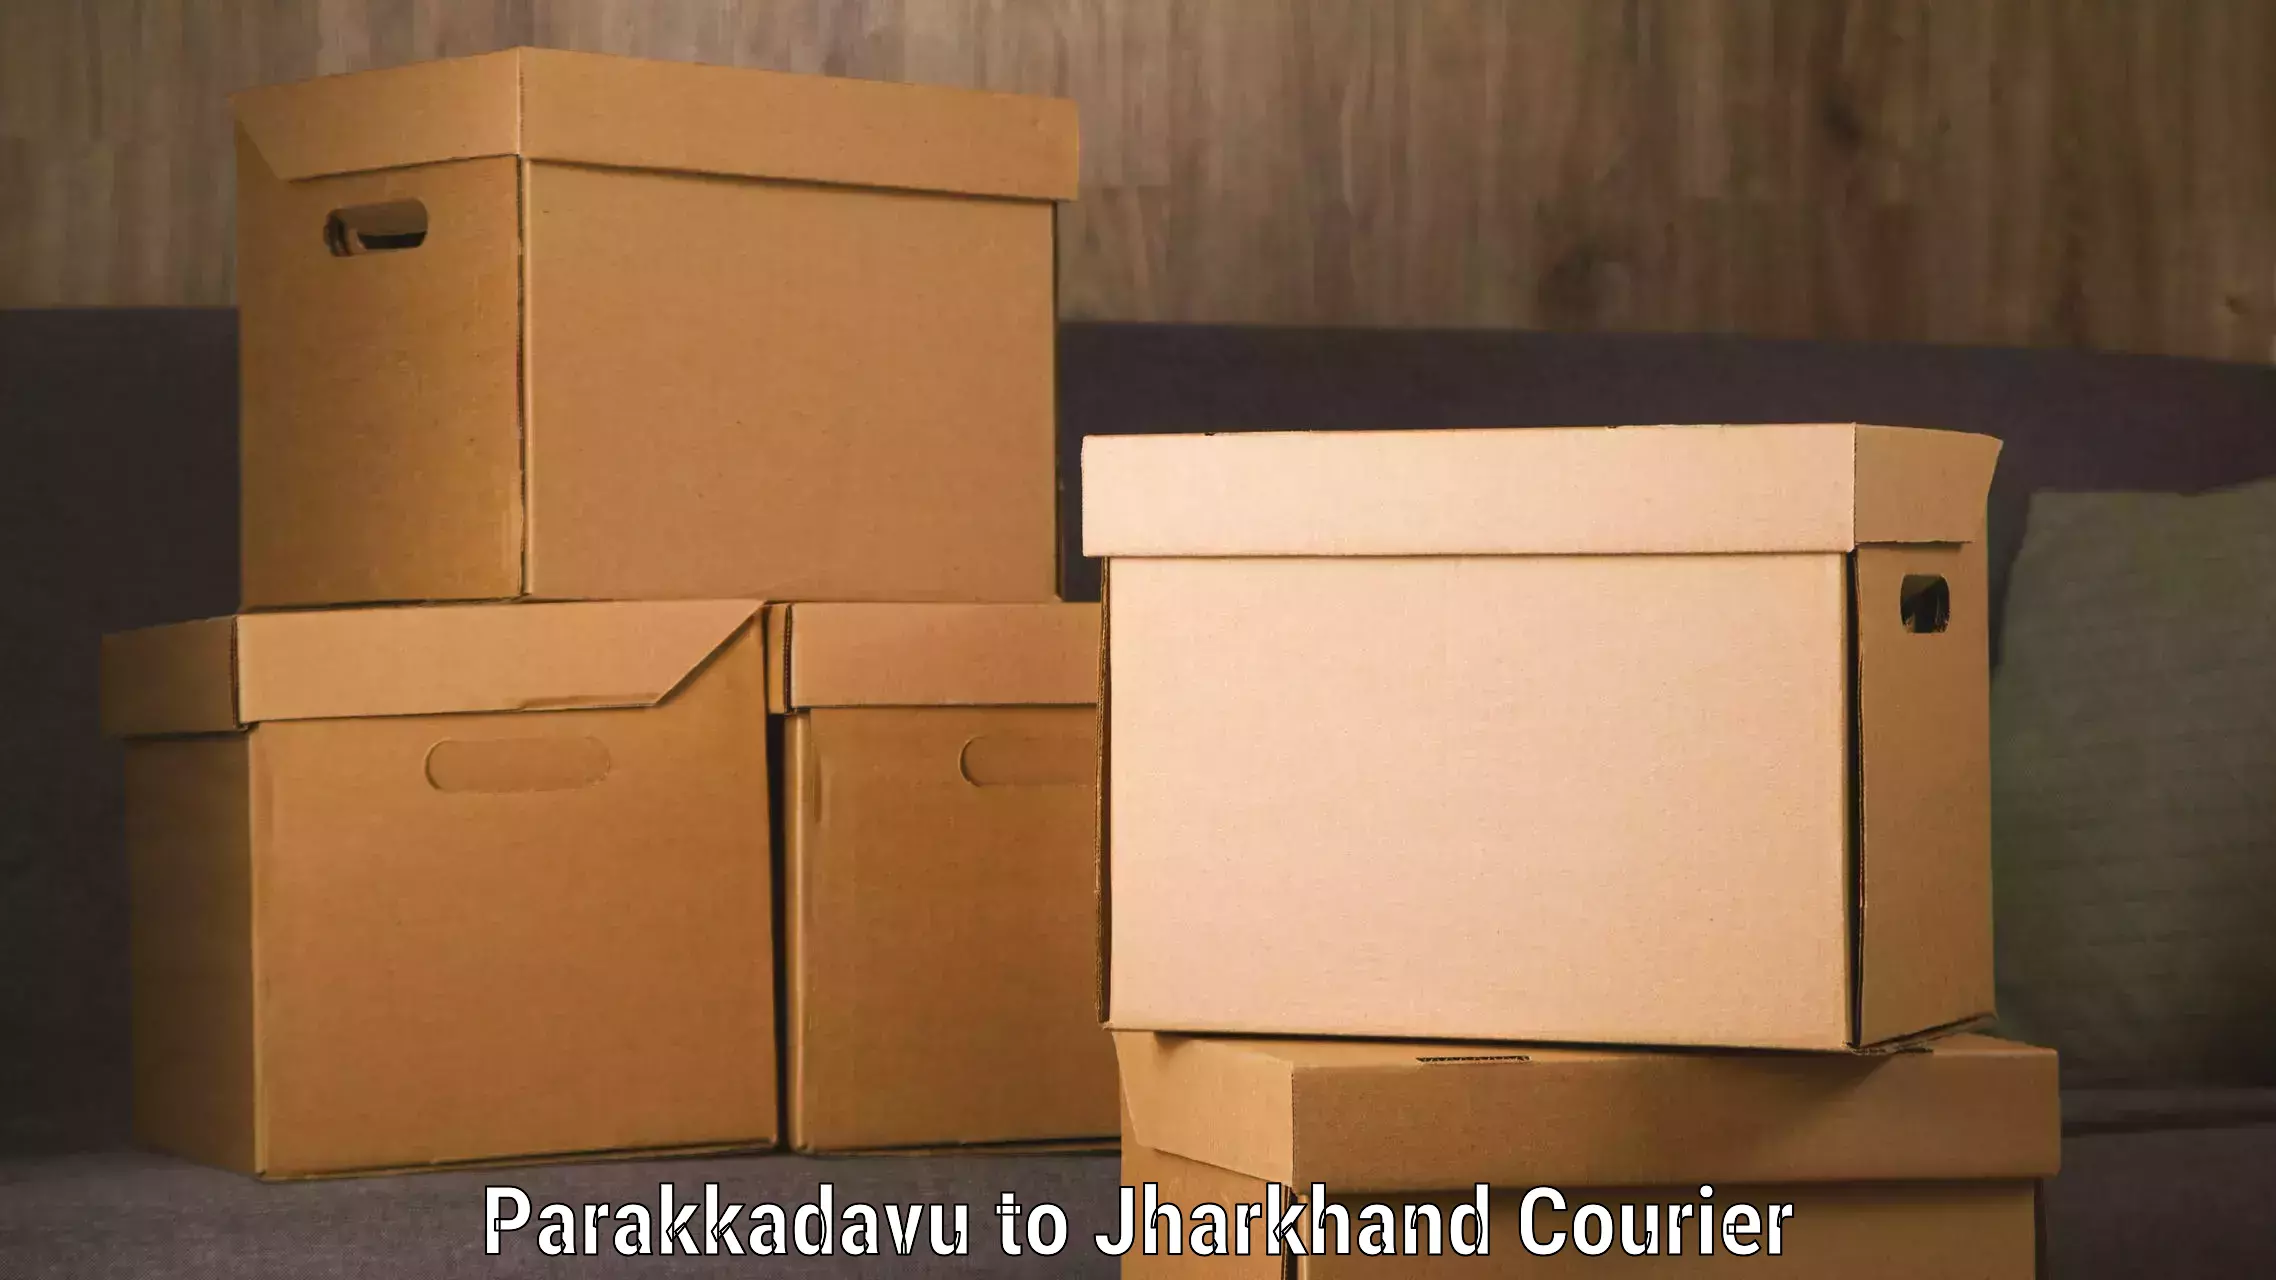 Express shipping in Parakkadavu to Tandwa